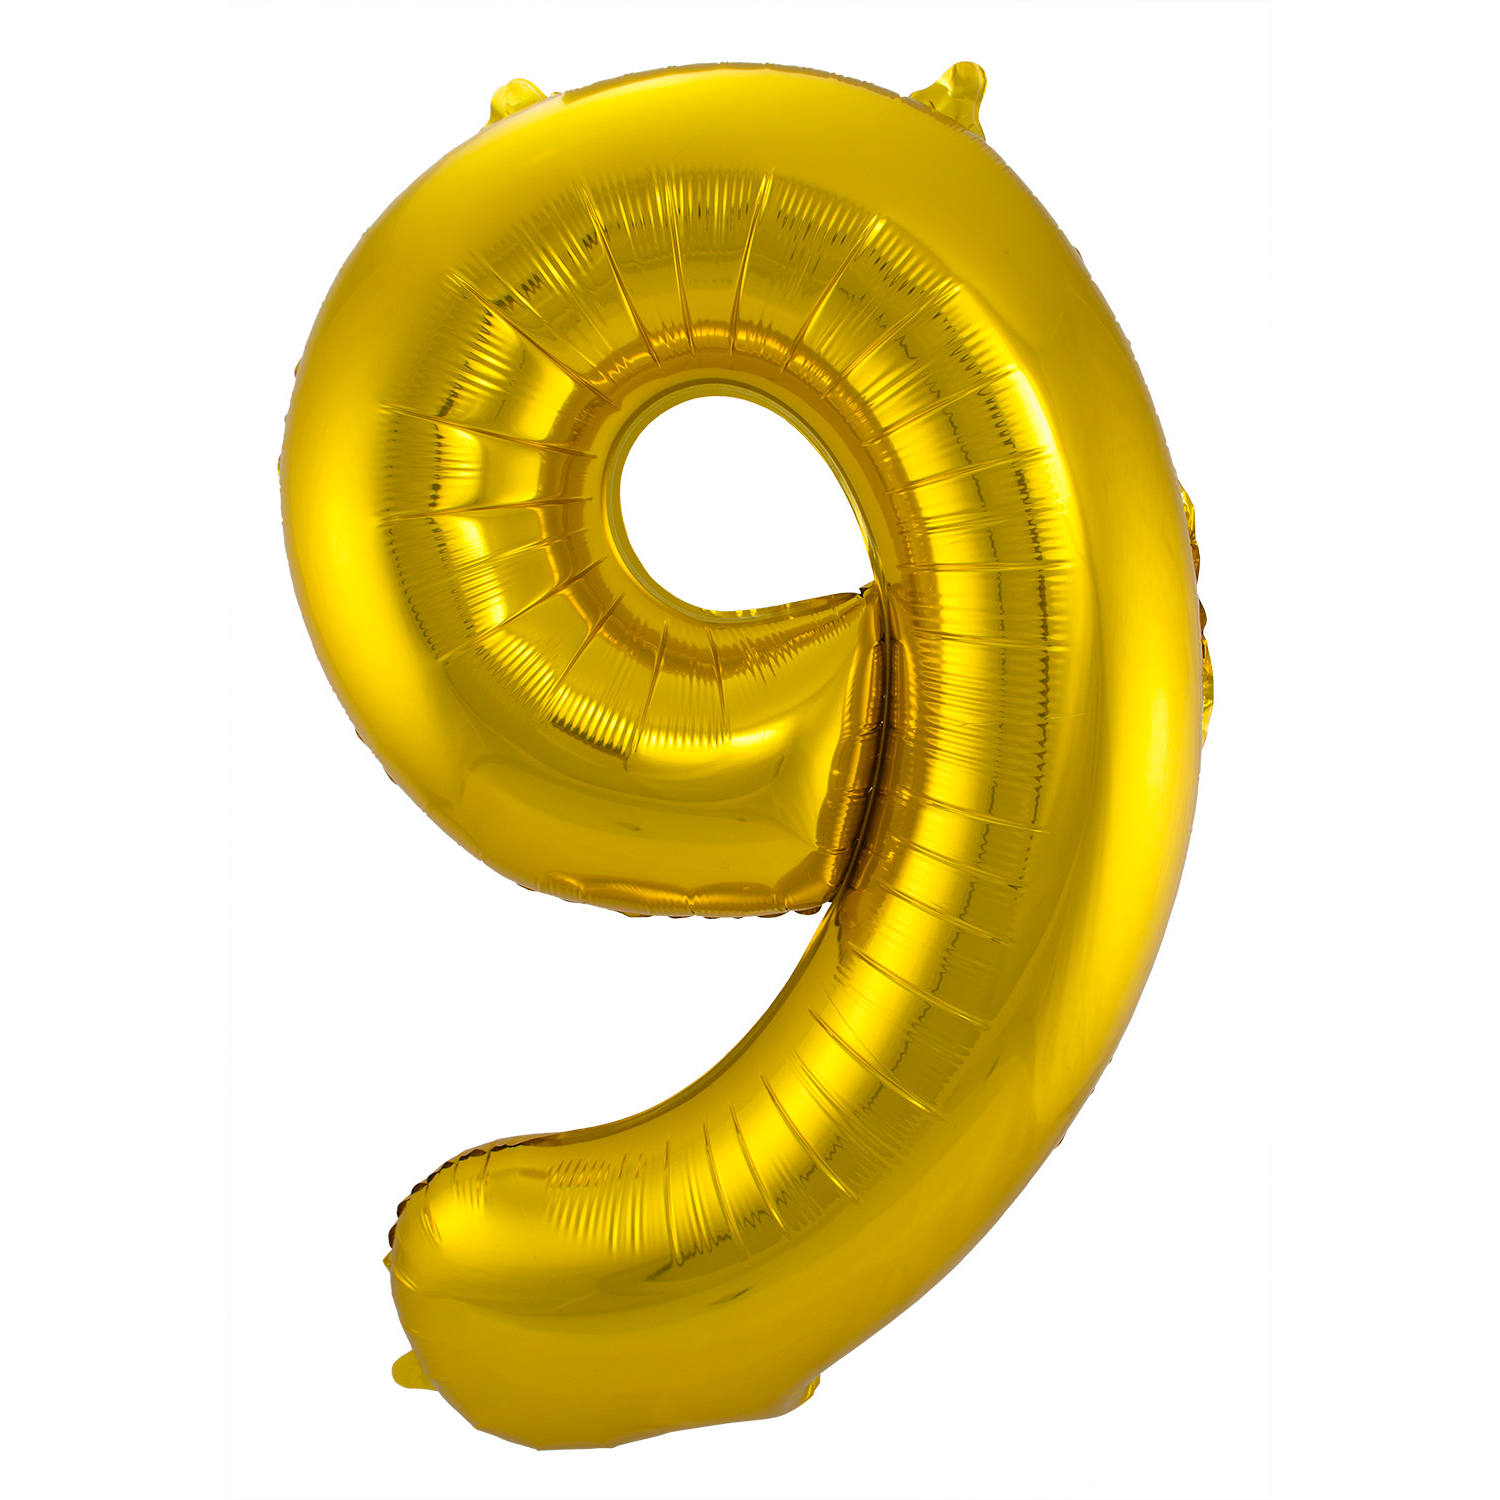 Billede af 9 Formet Nummer Folieballon (Guld, 86 cm)